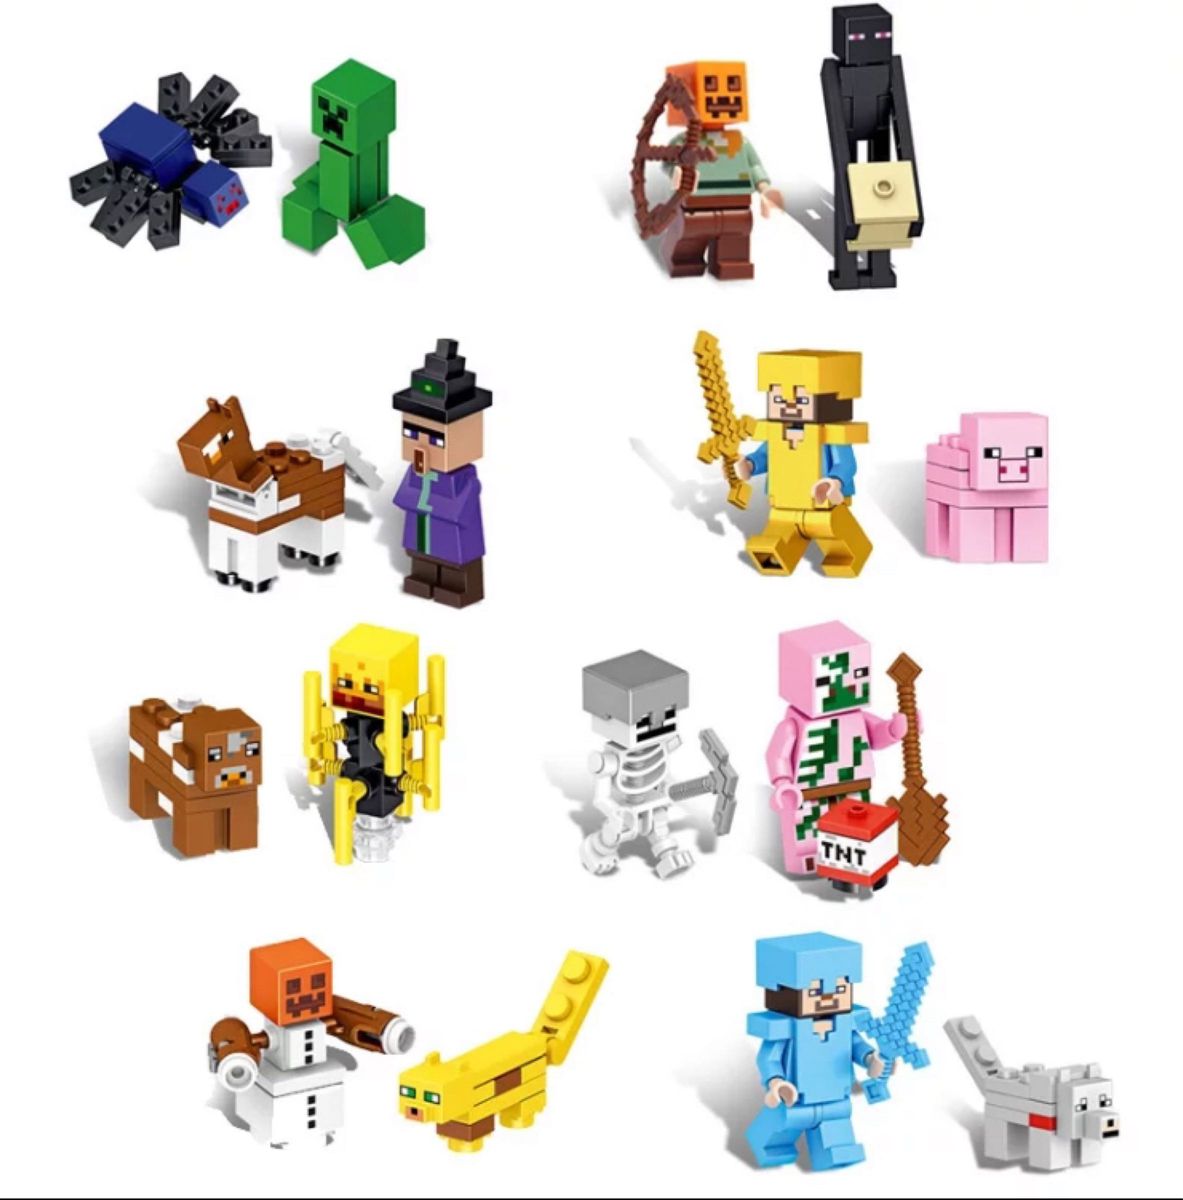 LEGO マインクラフト  ミニフィギュア  セット マイクラ フィギュア レゴ 互換 ゲーム YouTube クリスマス 誕生日